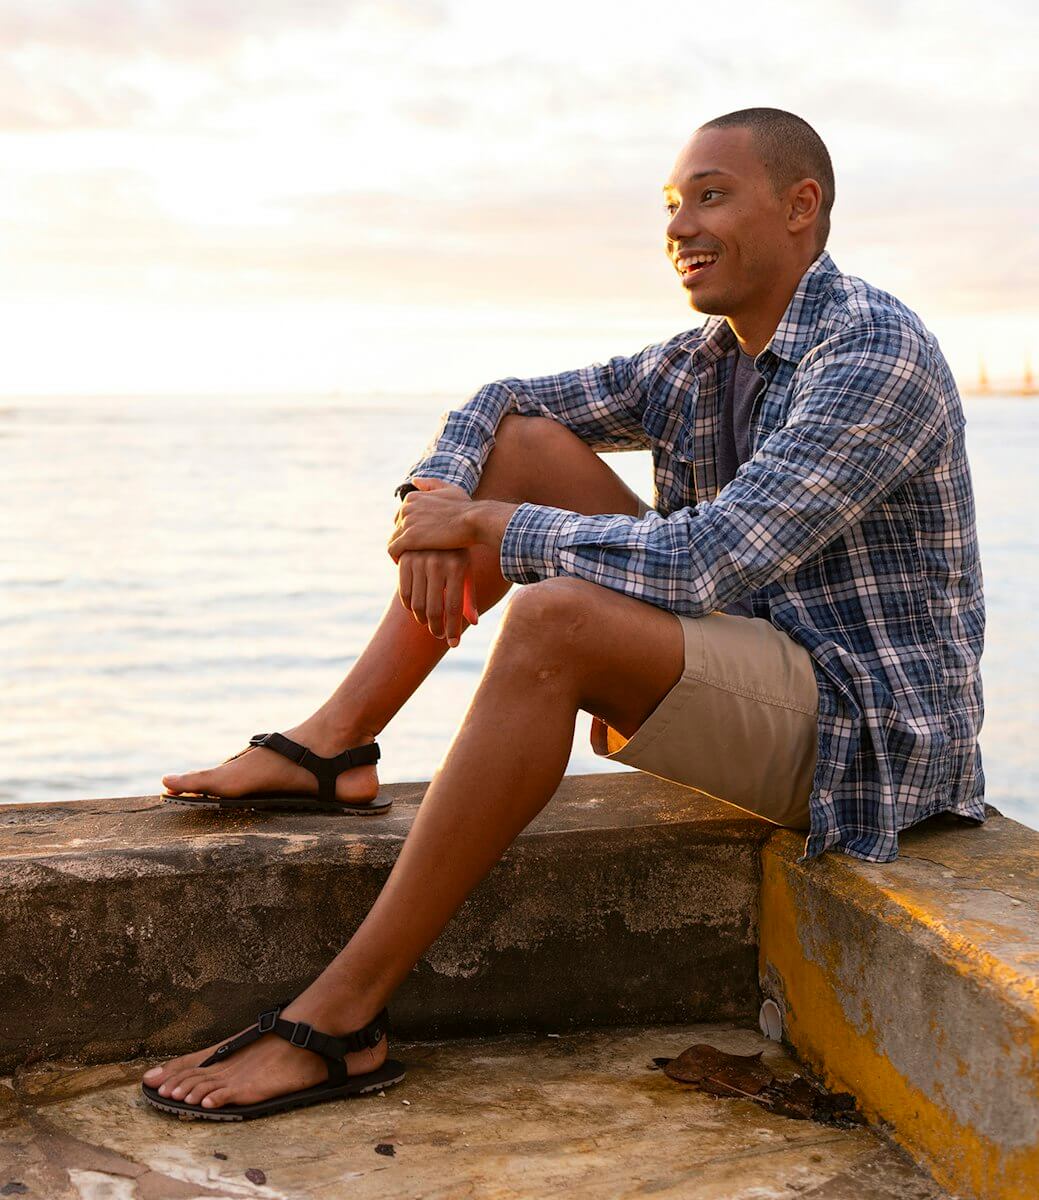 Un hombre sonriendo y sentado en el agua con sus sandalias H-Trail